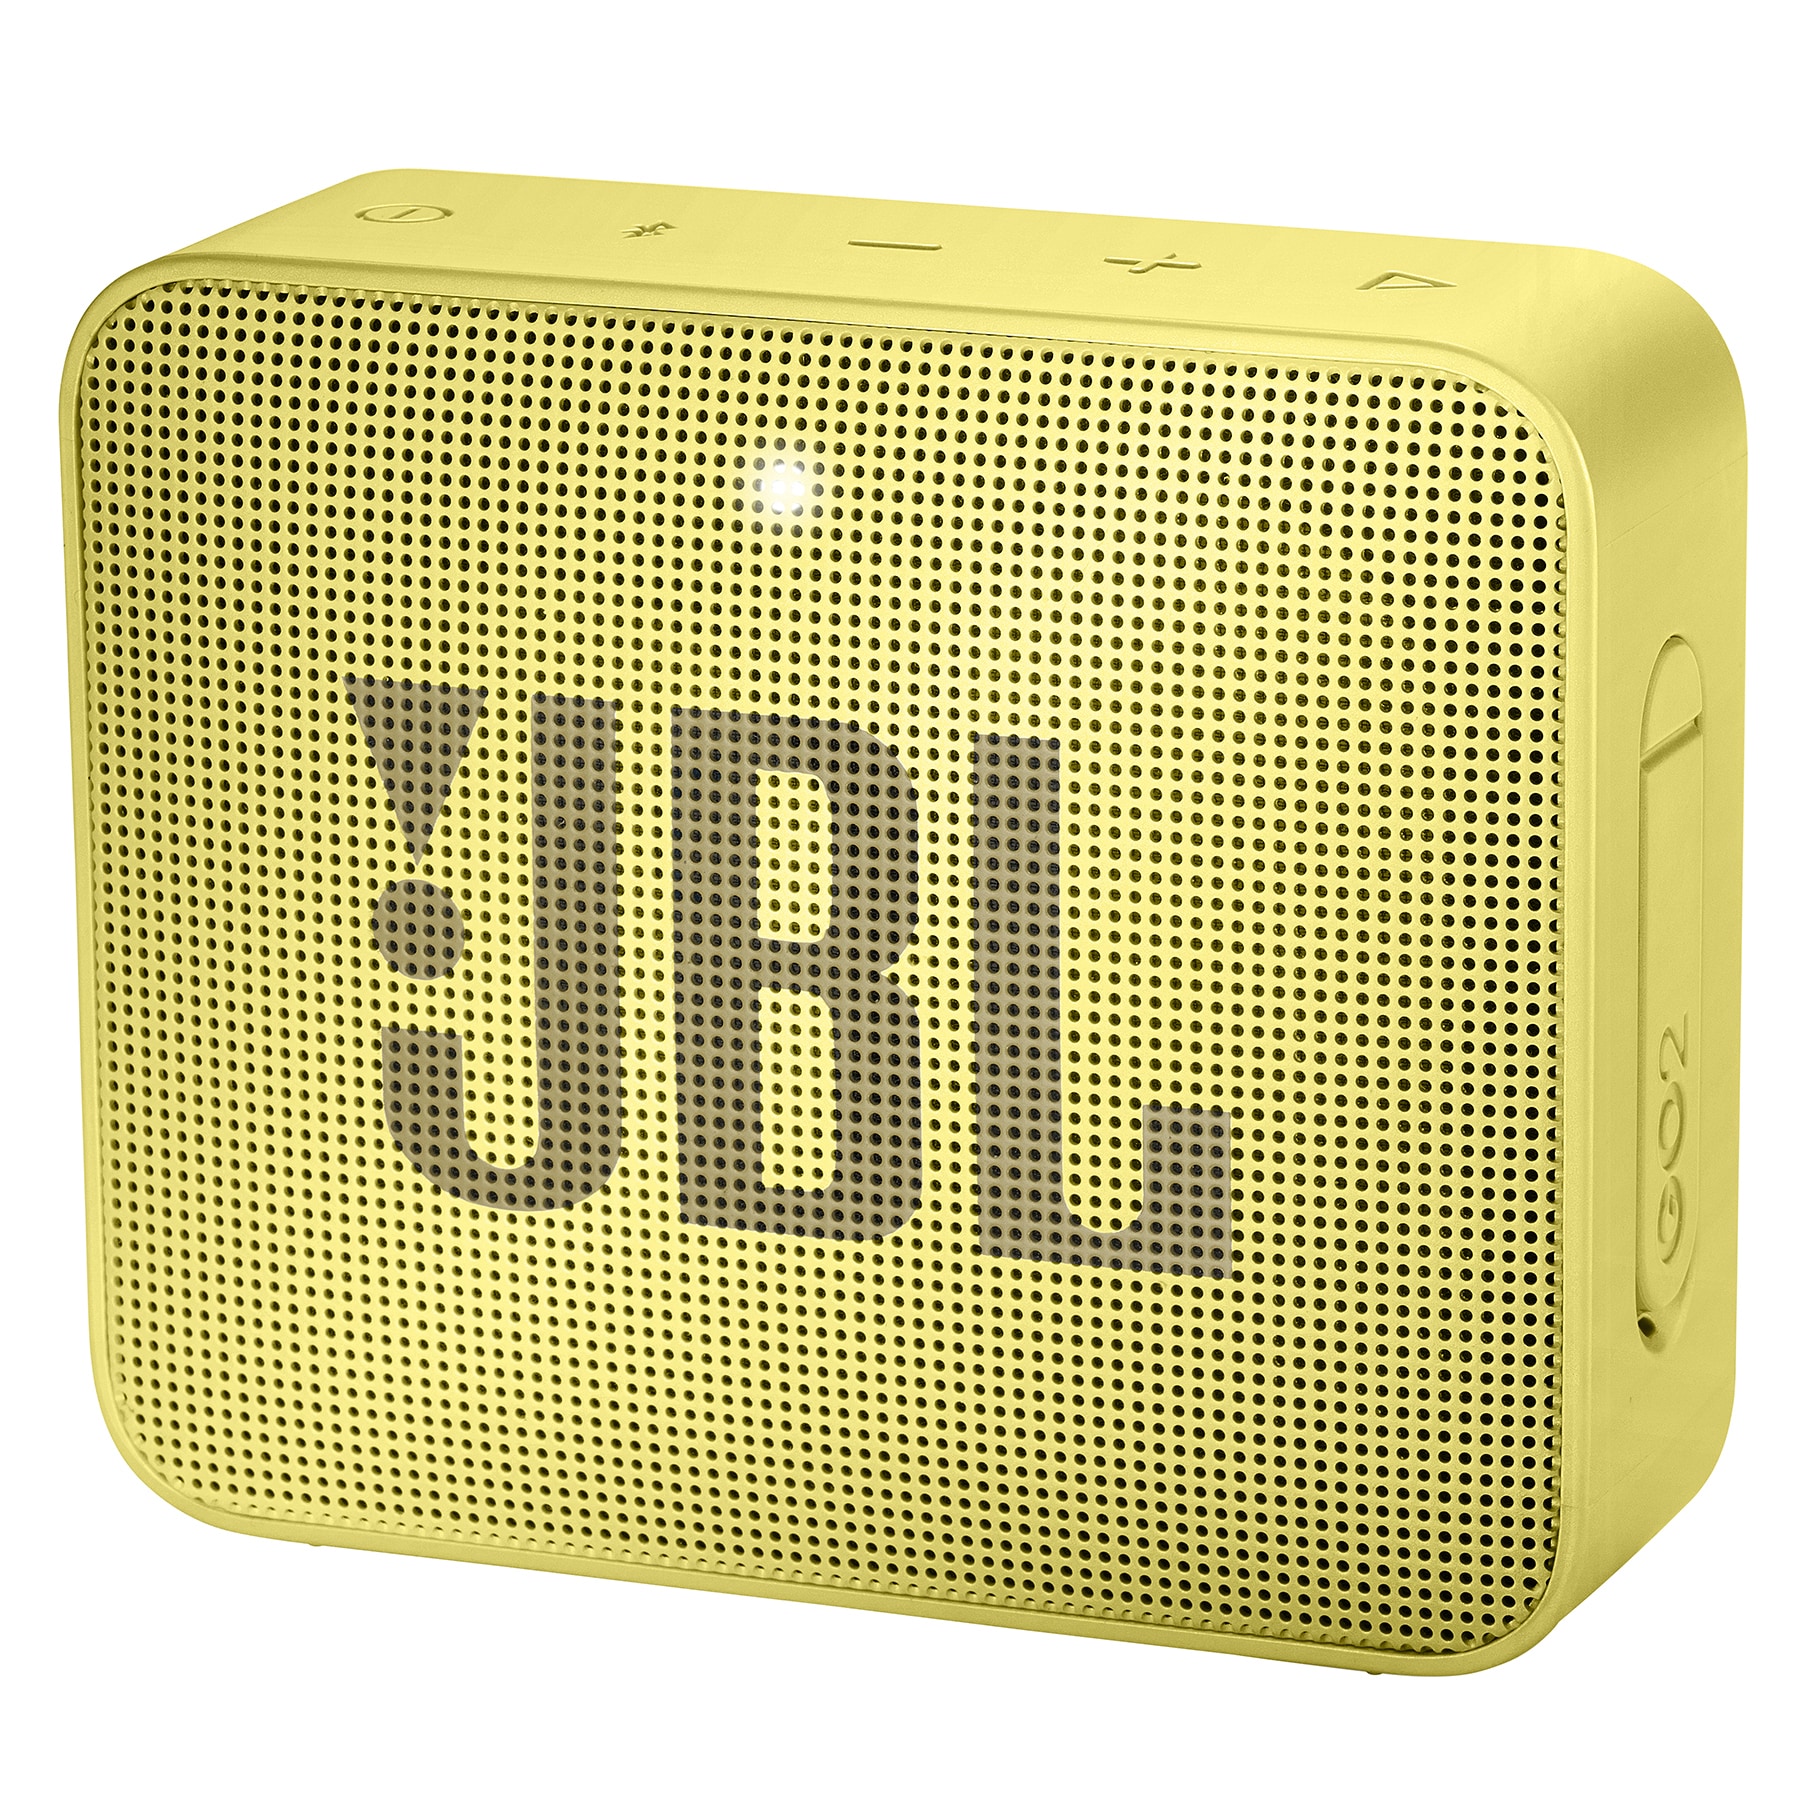 JBL GO 2 trådløs høyttaler (gul) - Elkjøp